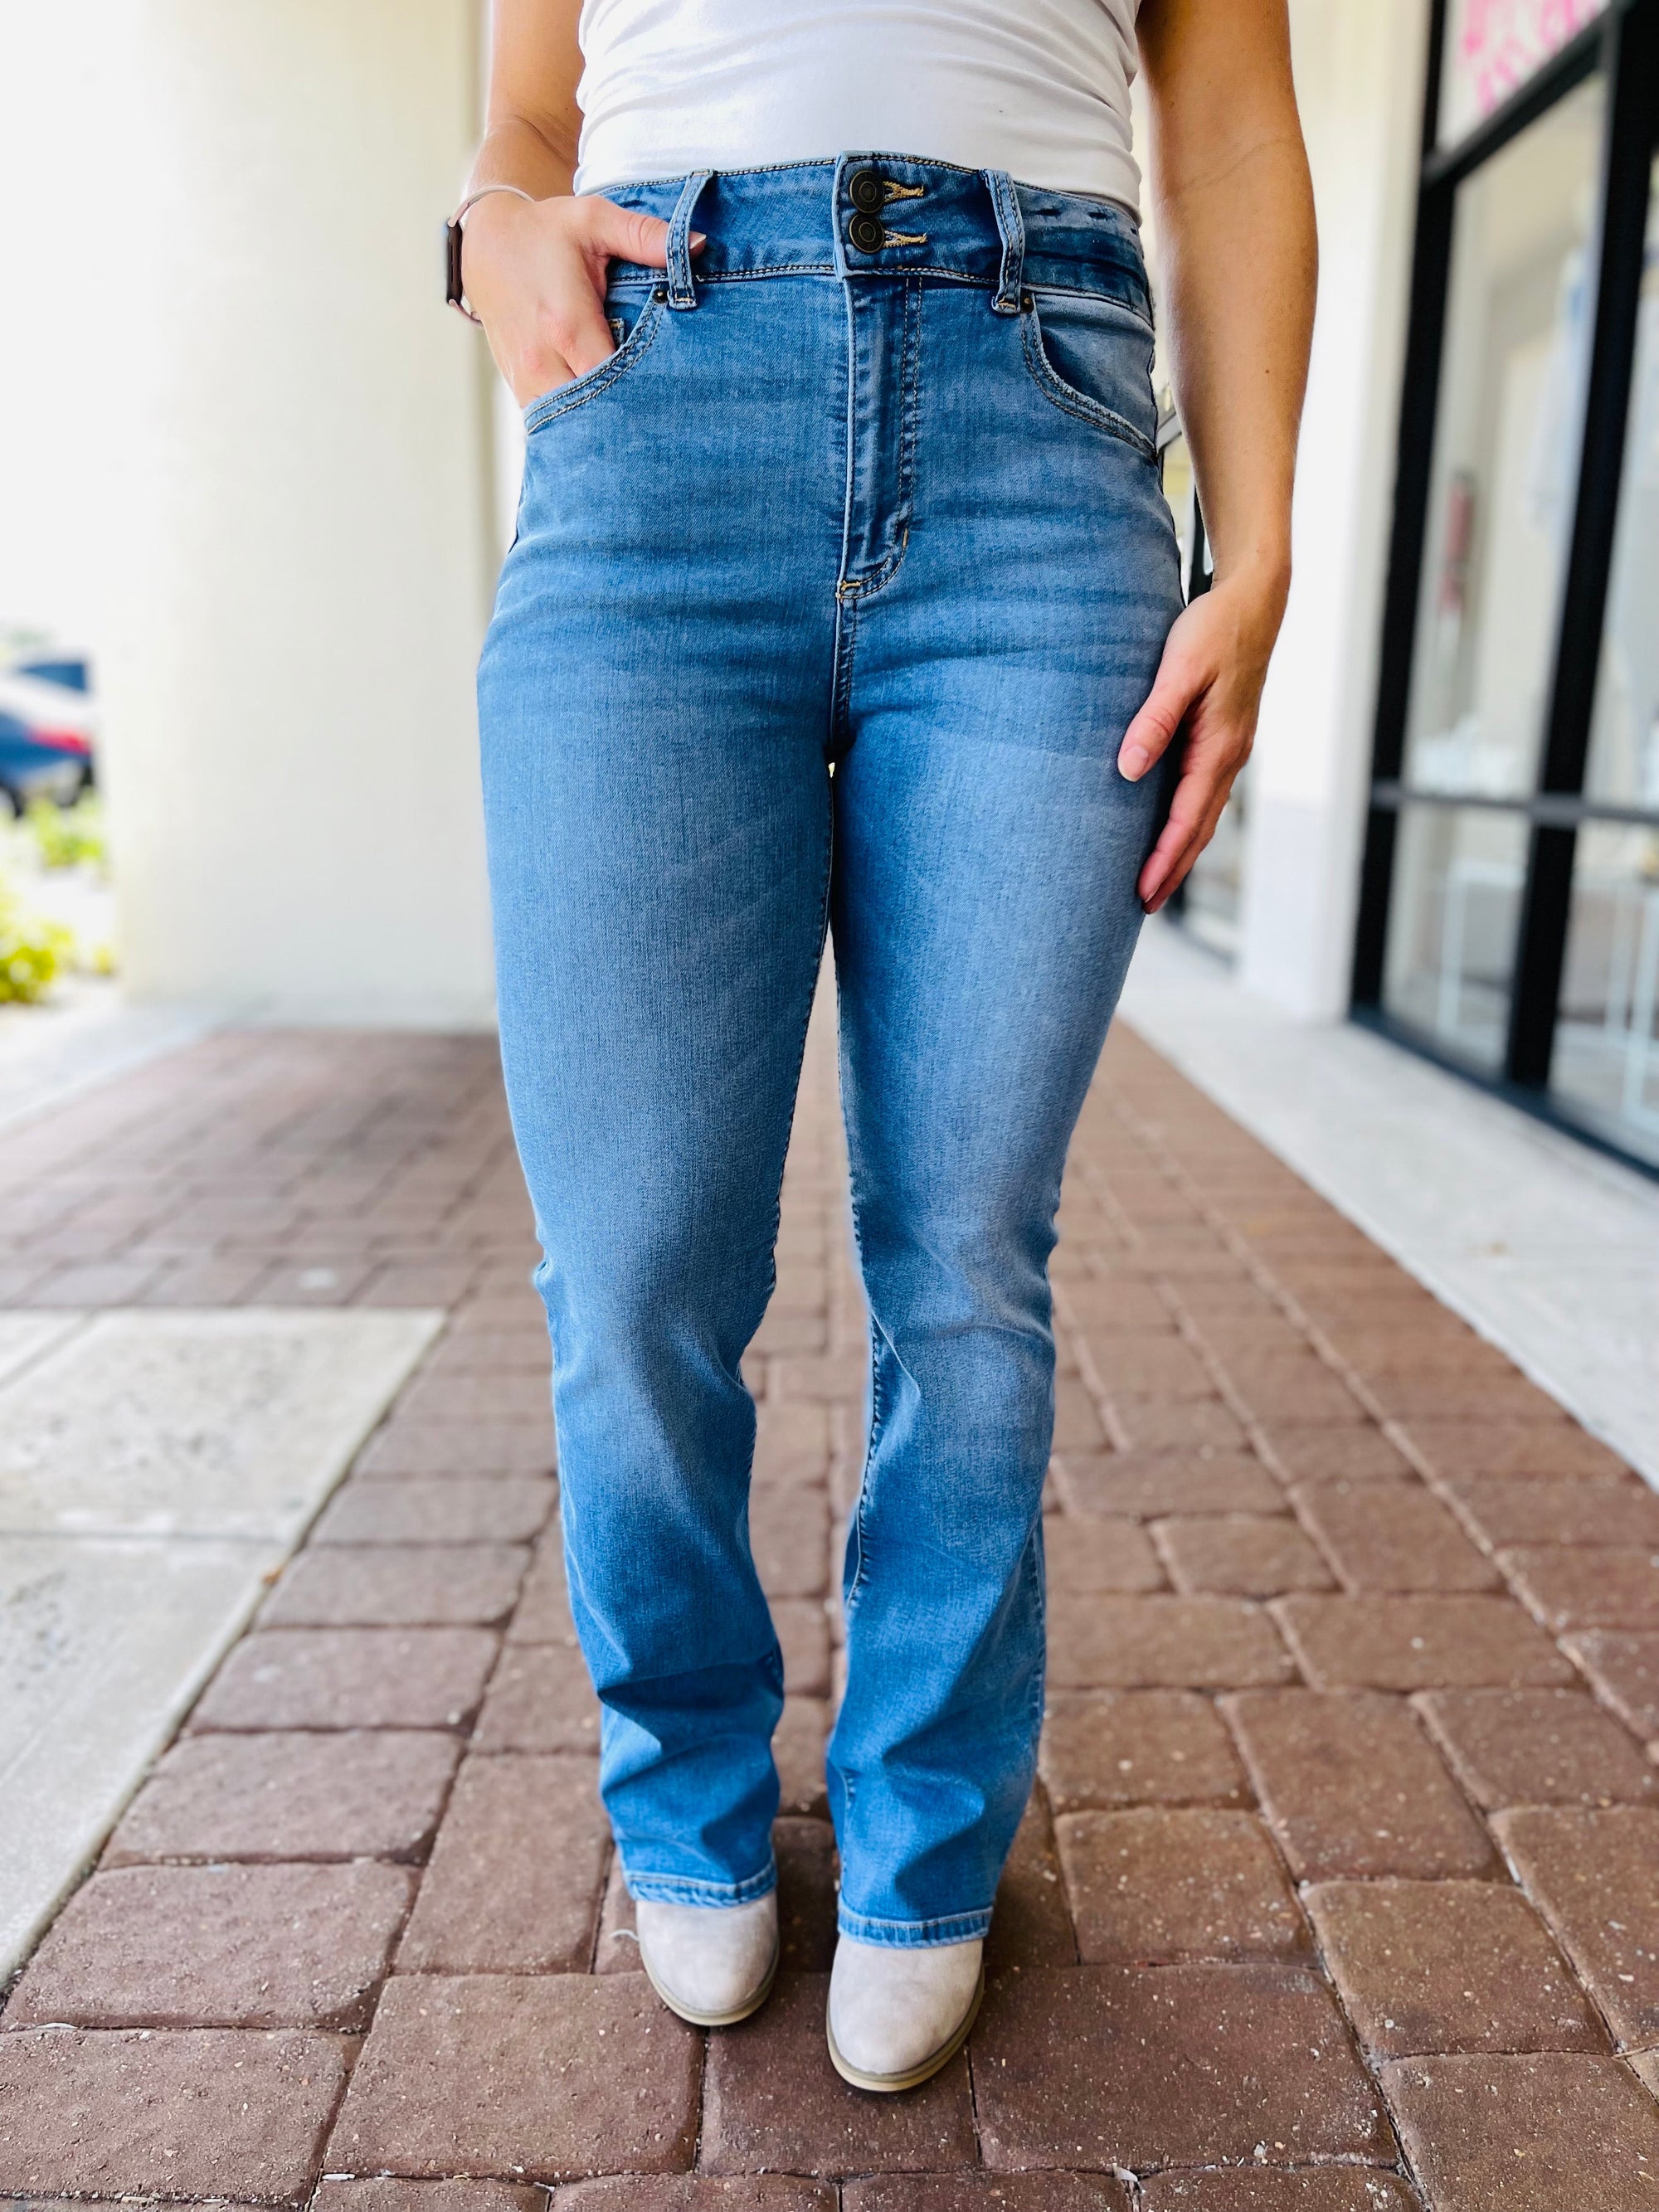 IS Sneak Peek Heidi Slim Bootcut Jeans